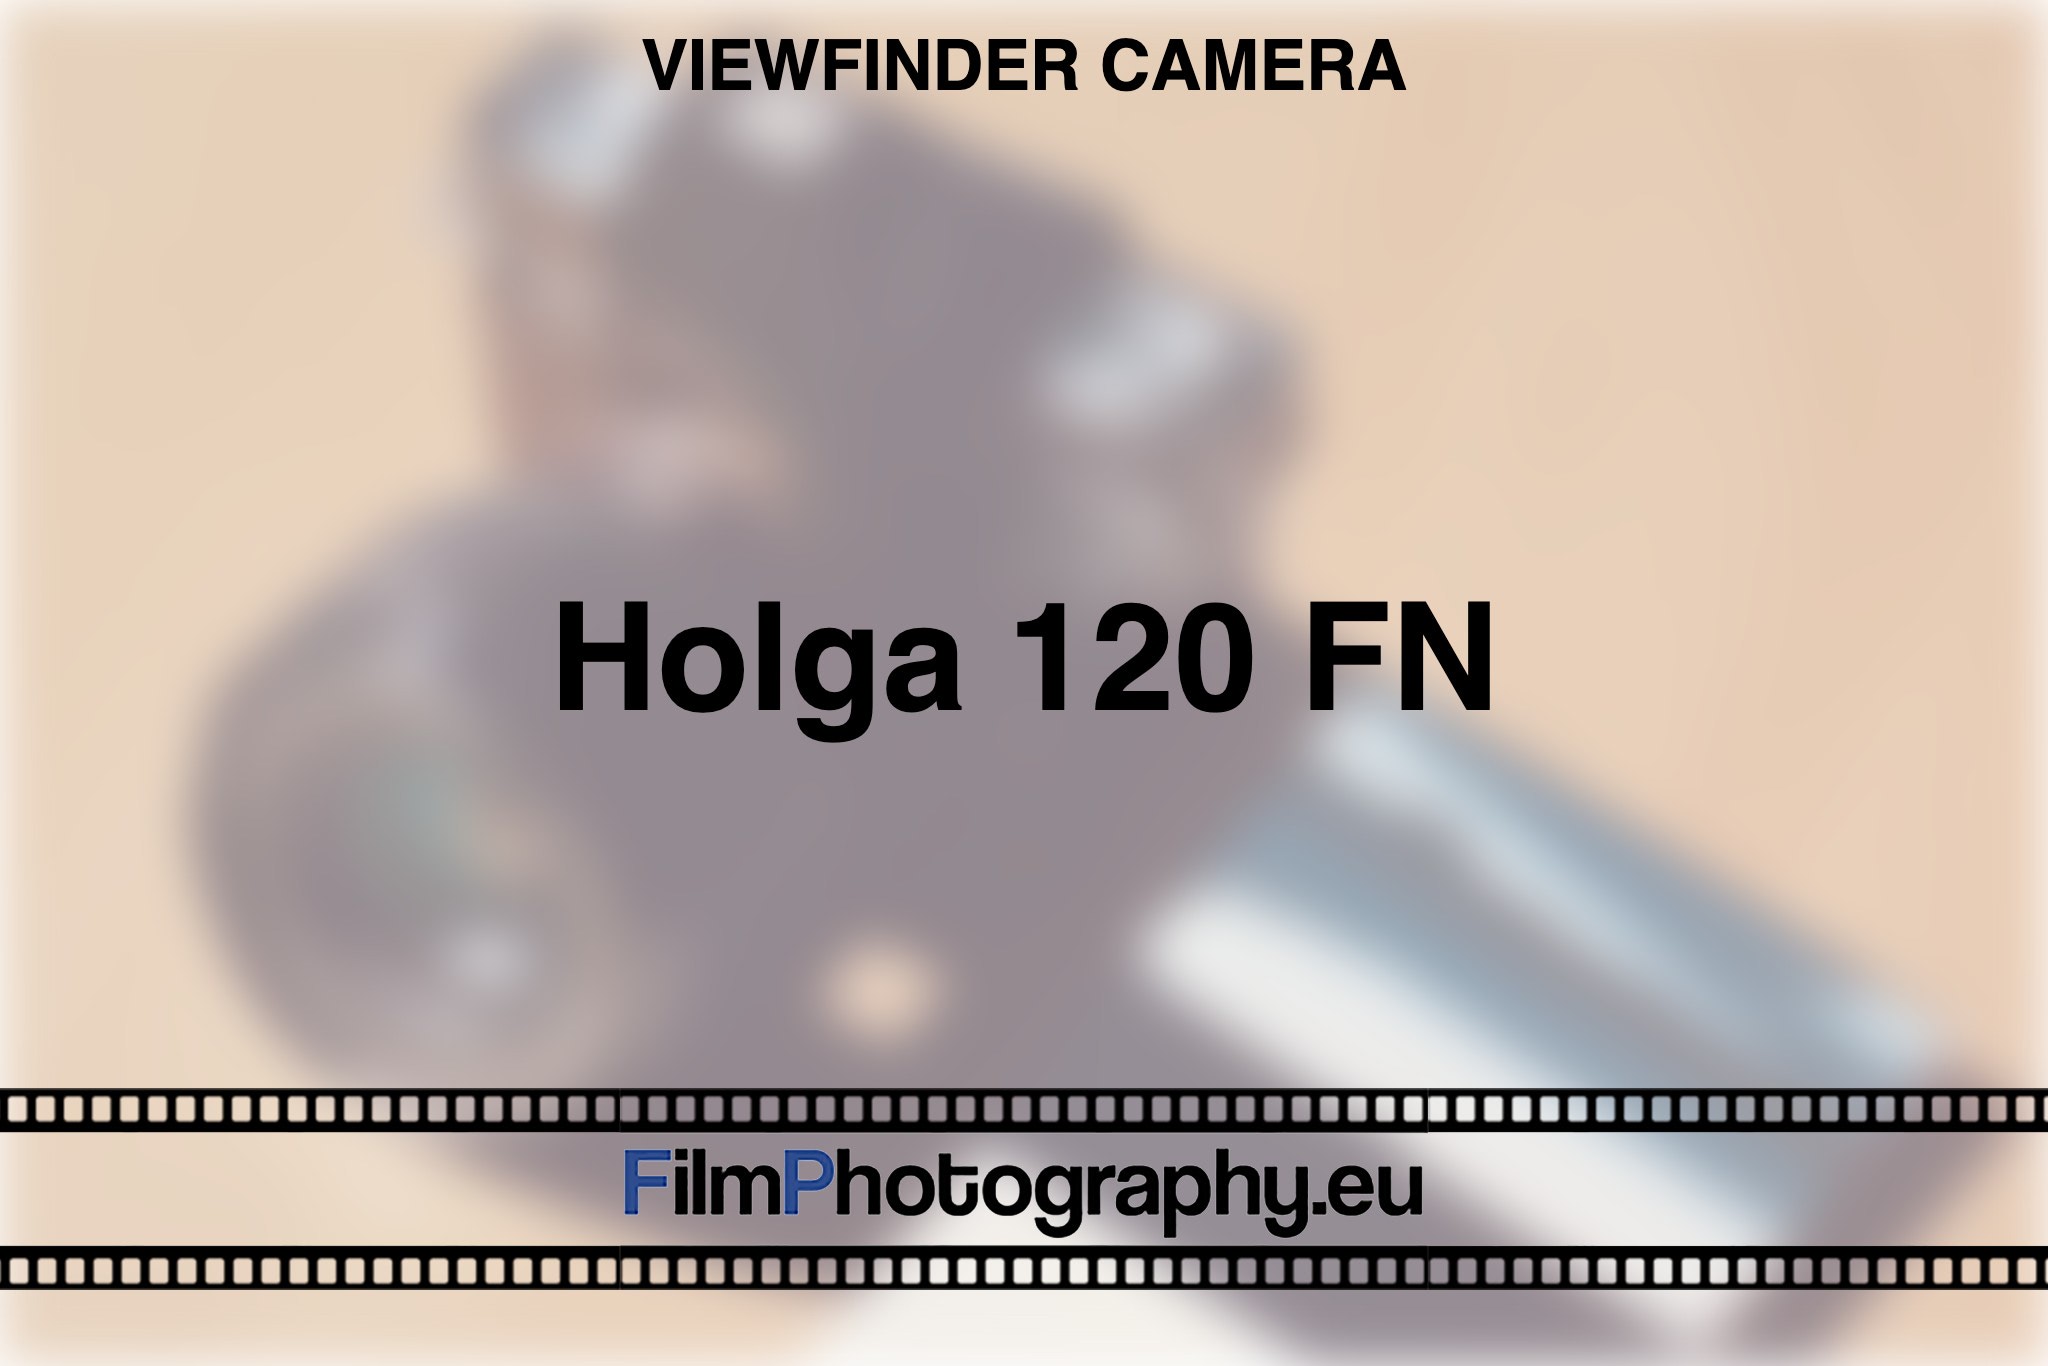 holga-120-fn-viewfinder-camera-bnv